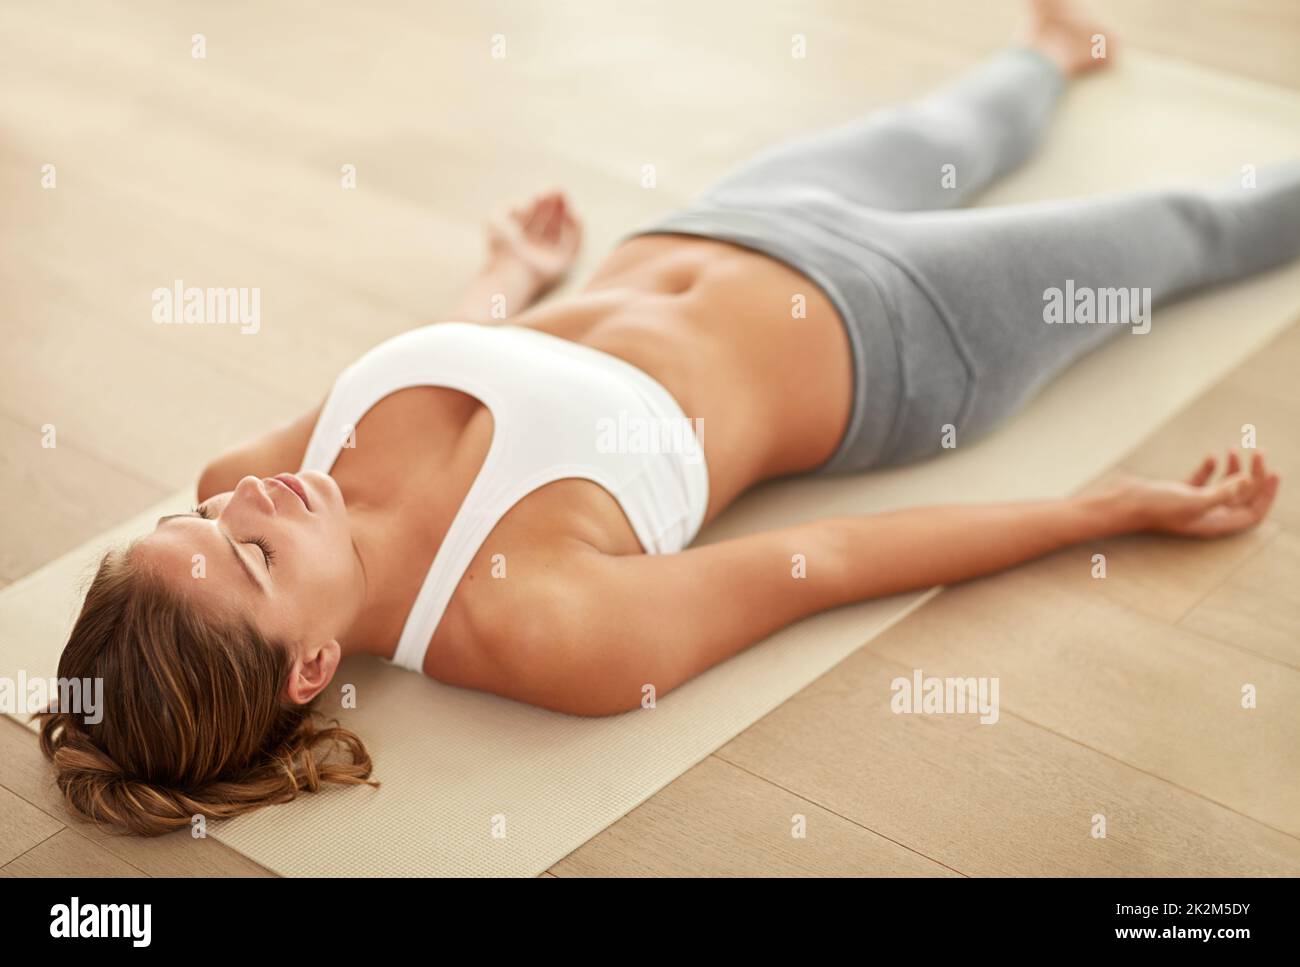 Atmen Sie ein... atmen Sie aus Aufnahme einer sportlichen jungen Frau, die eine Entspannungsübung macht. Stockfoto